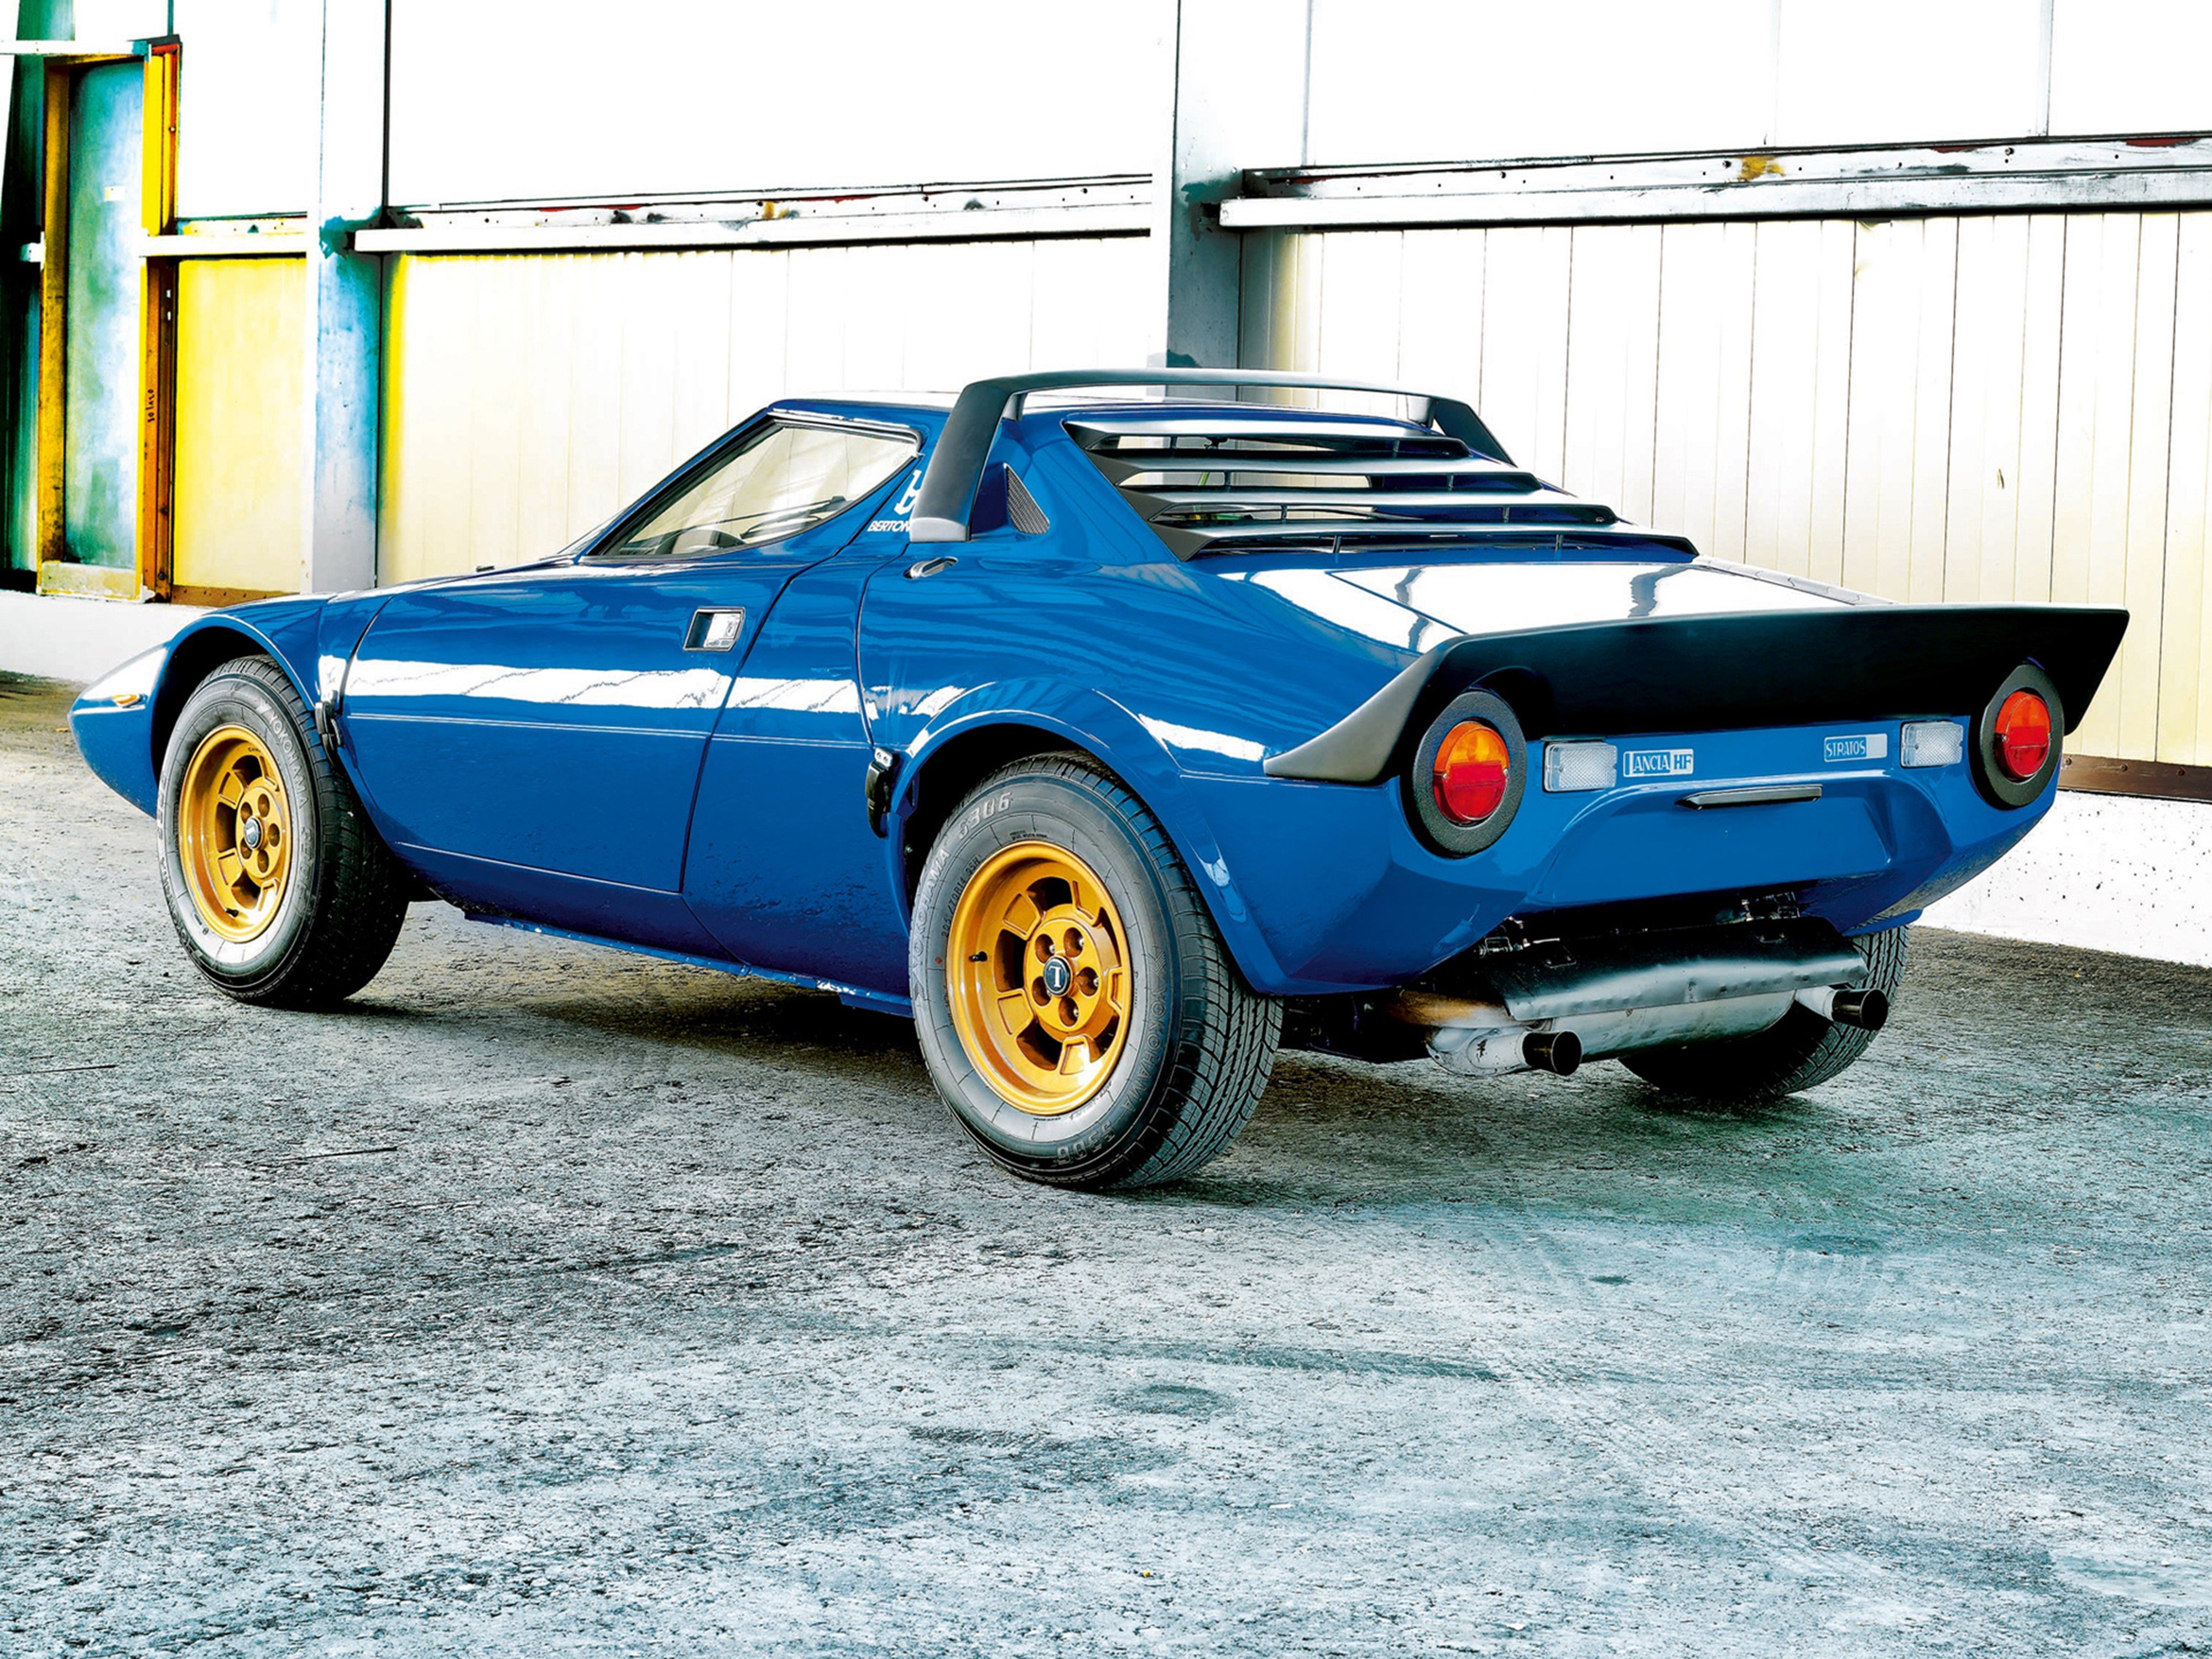 1973, Lancia, Stratos hf, Car, Italy, Sport, Supercar, 4000x3000 Wallpaper